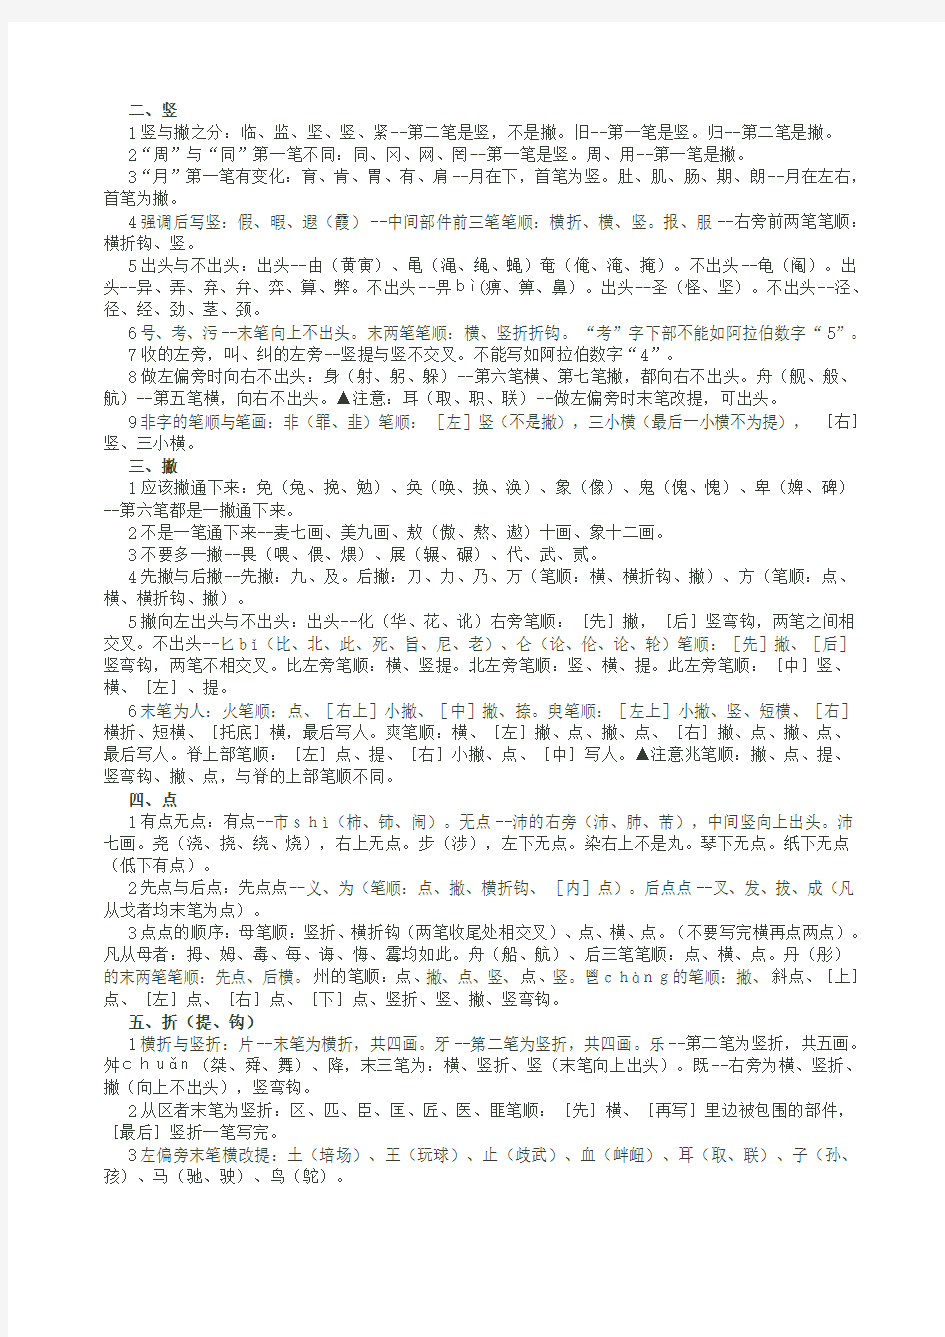 西师版汉字笔画名称和笔顺规则表